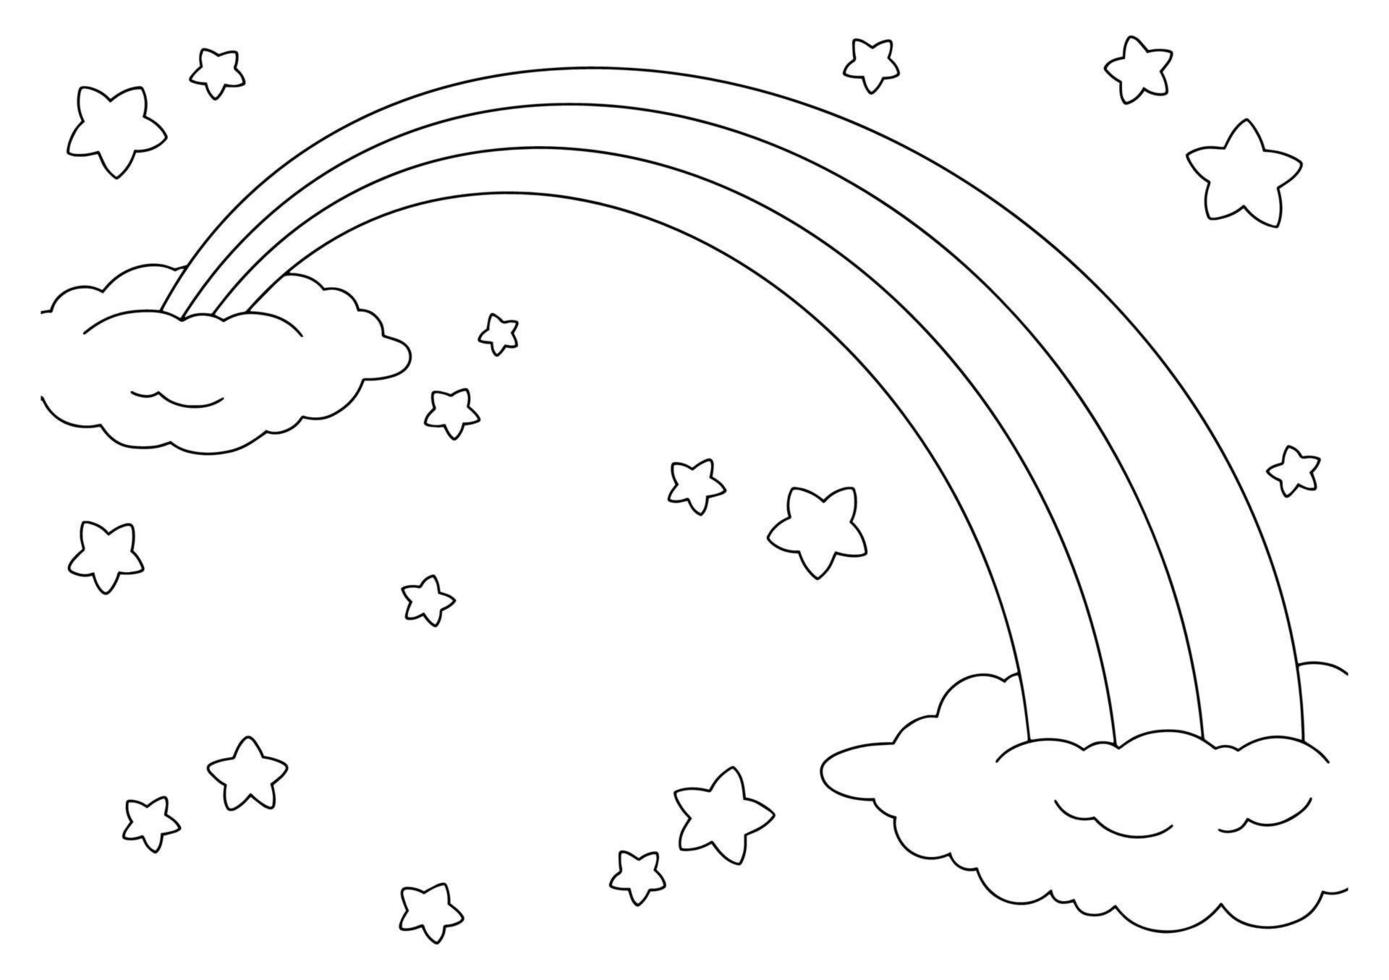 sprookjesachtige hemel met regenboog, sterren en wolken. kleurboekpagina voor kinderen. stripfiguur in stijl. vectorillustratie geïsoleerd op een witte achtergrond. vector